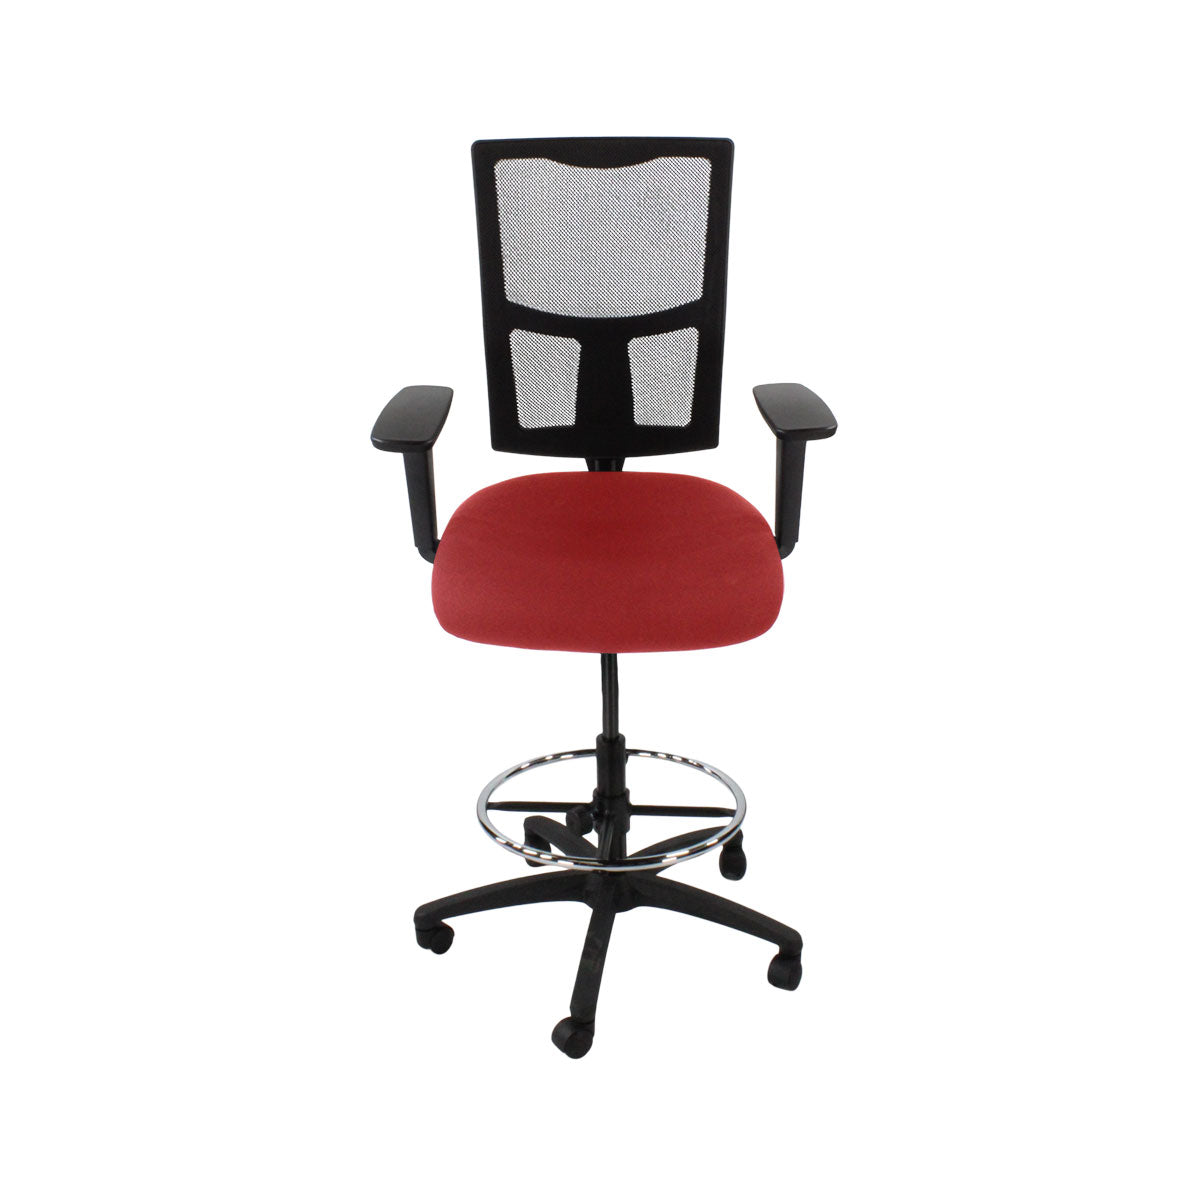 TOC: Ergo 2 tekenstoel in rode stof - gerenoveerd